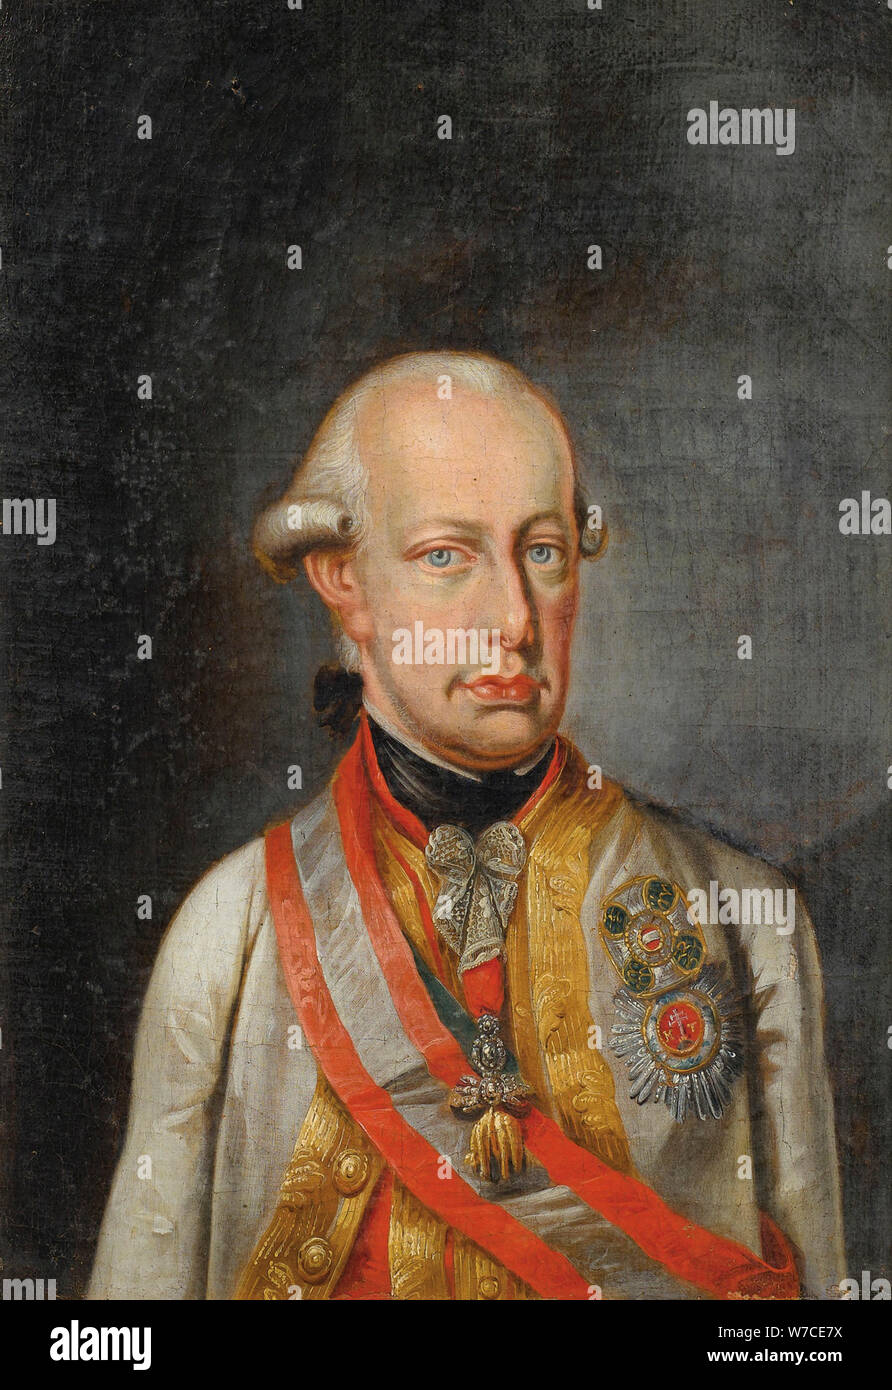 Ritratto di Leopoldo II, Imperatore del Sacro Romano Impero (1747-1792). Foto Stock